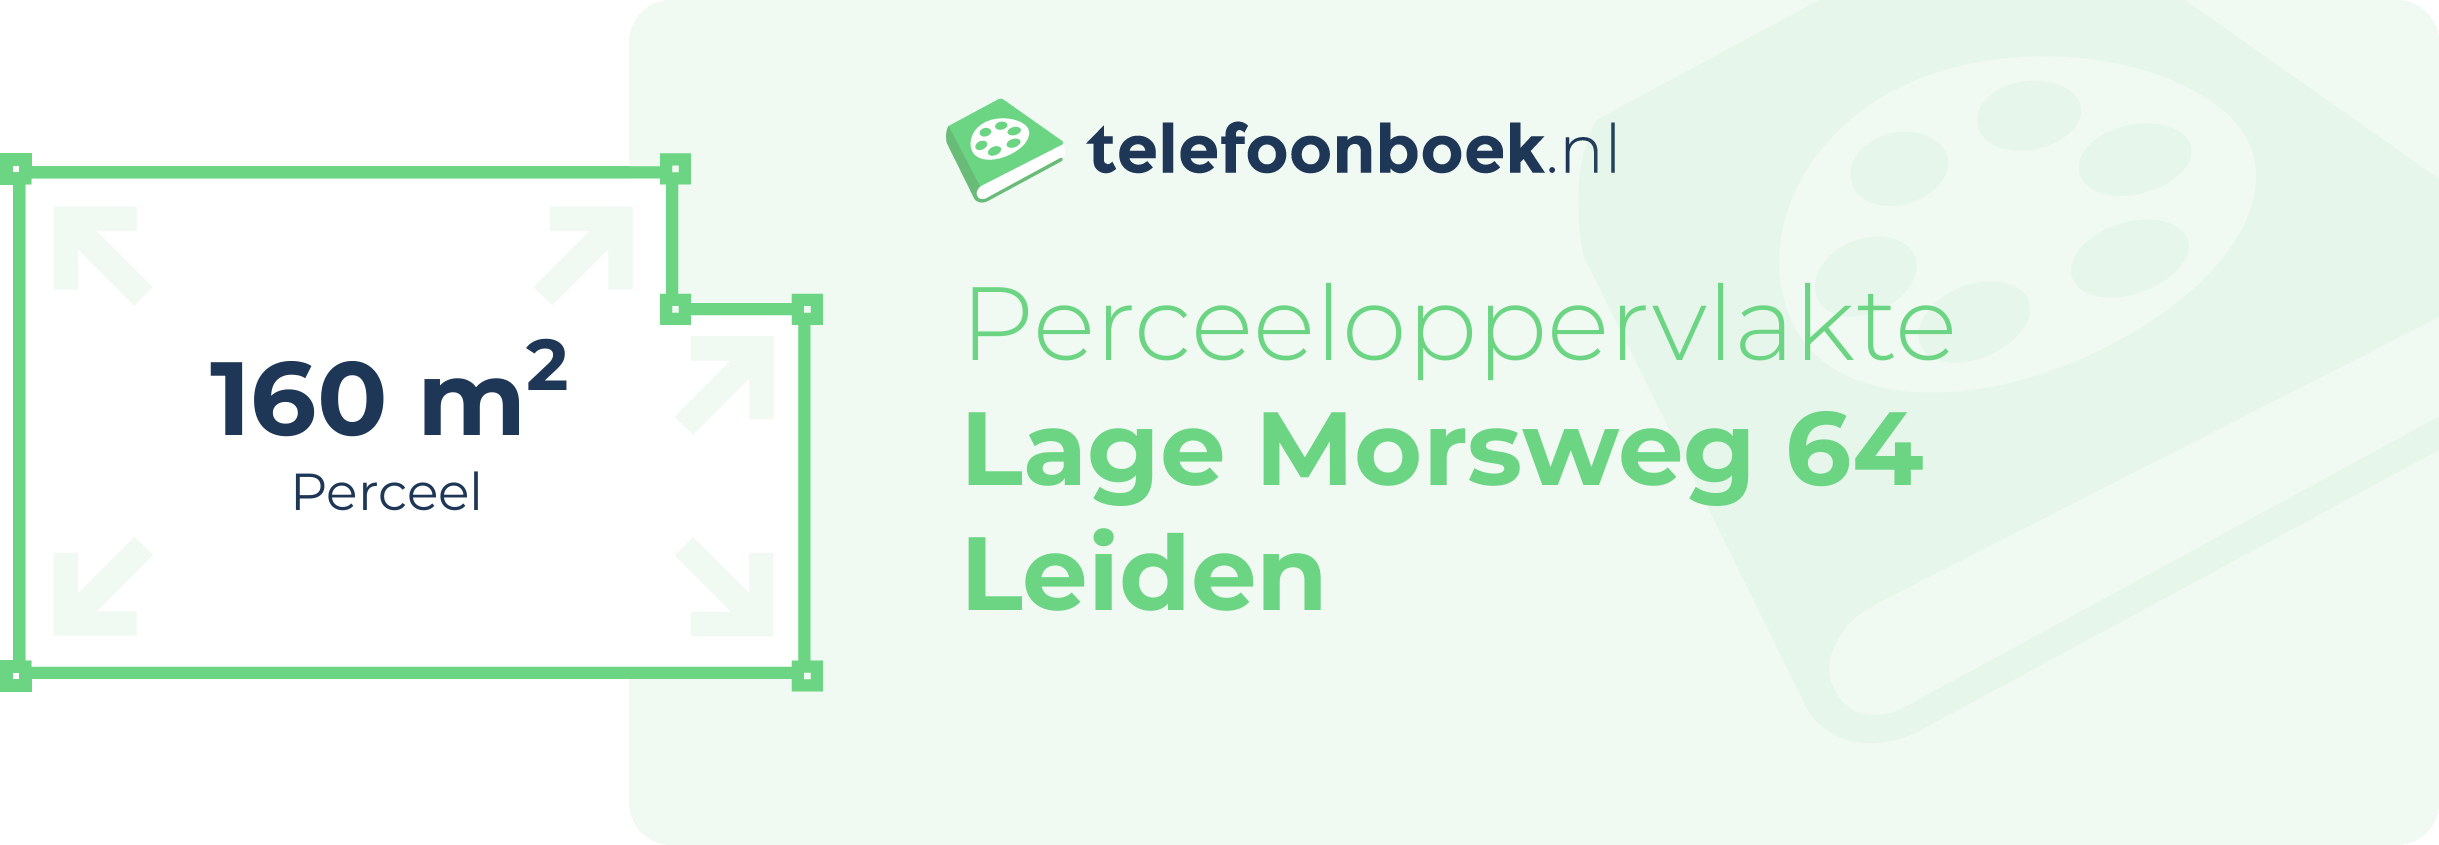 Perceeloppervlakte Lage Morsweg 64 Leiden